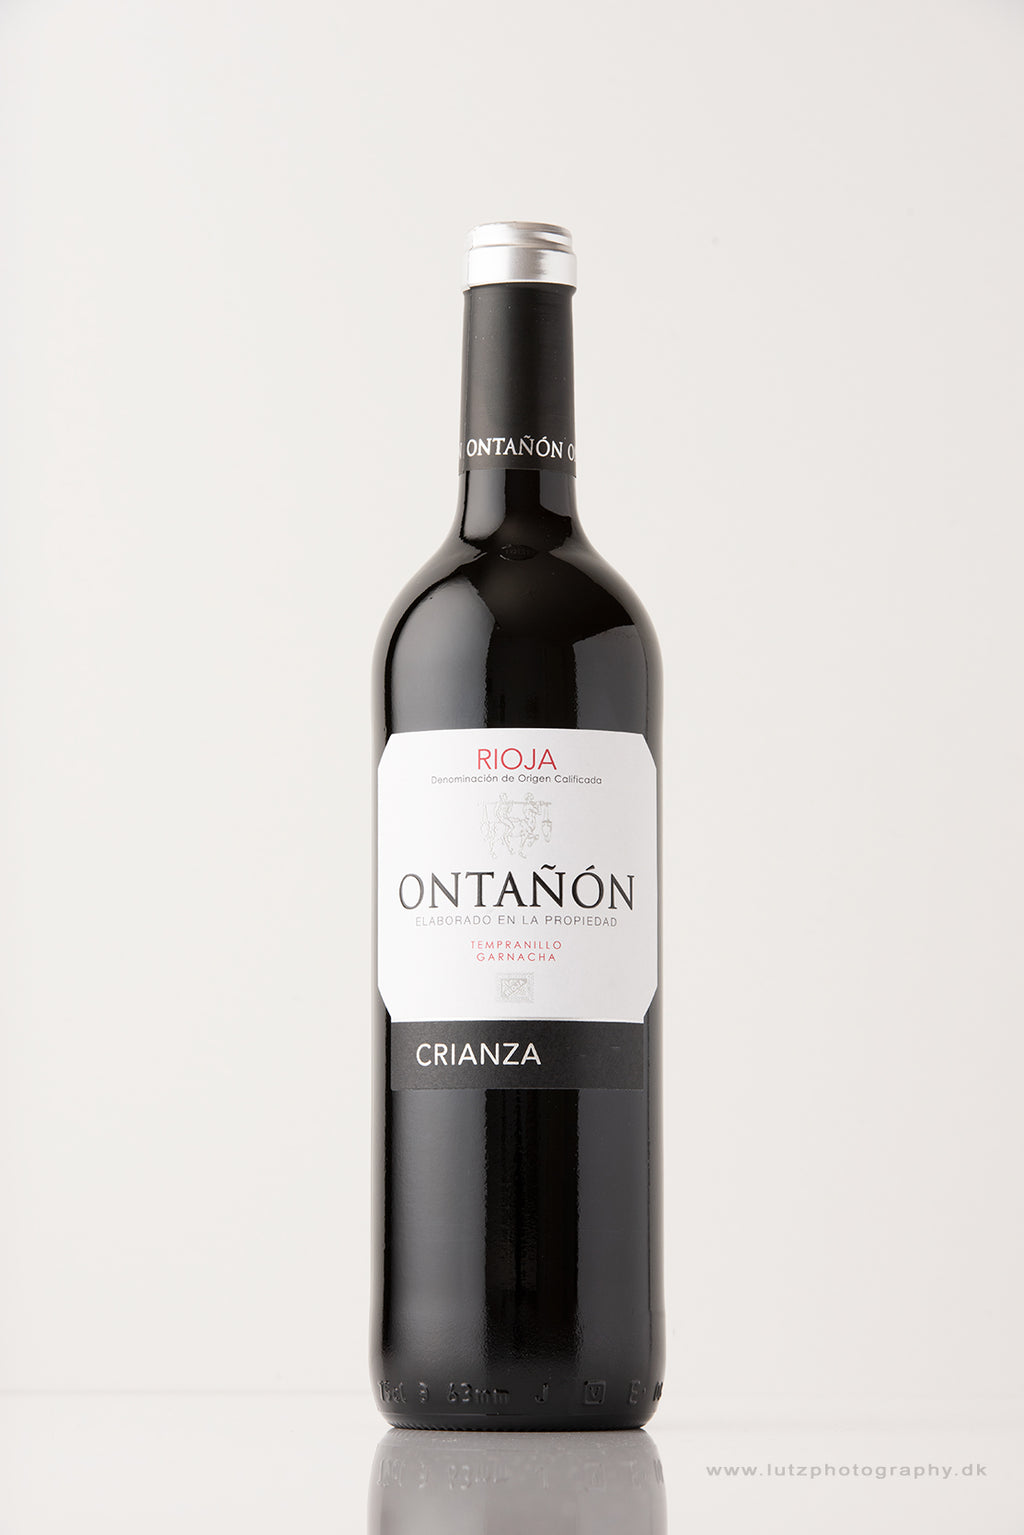 Ontanon Crianza 2017 Rioja